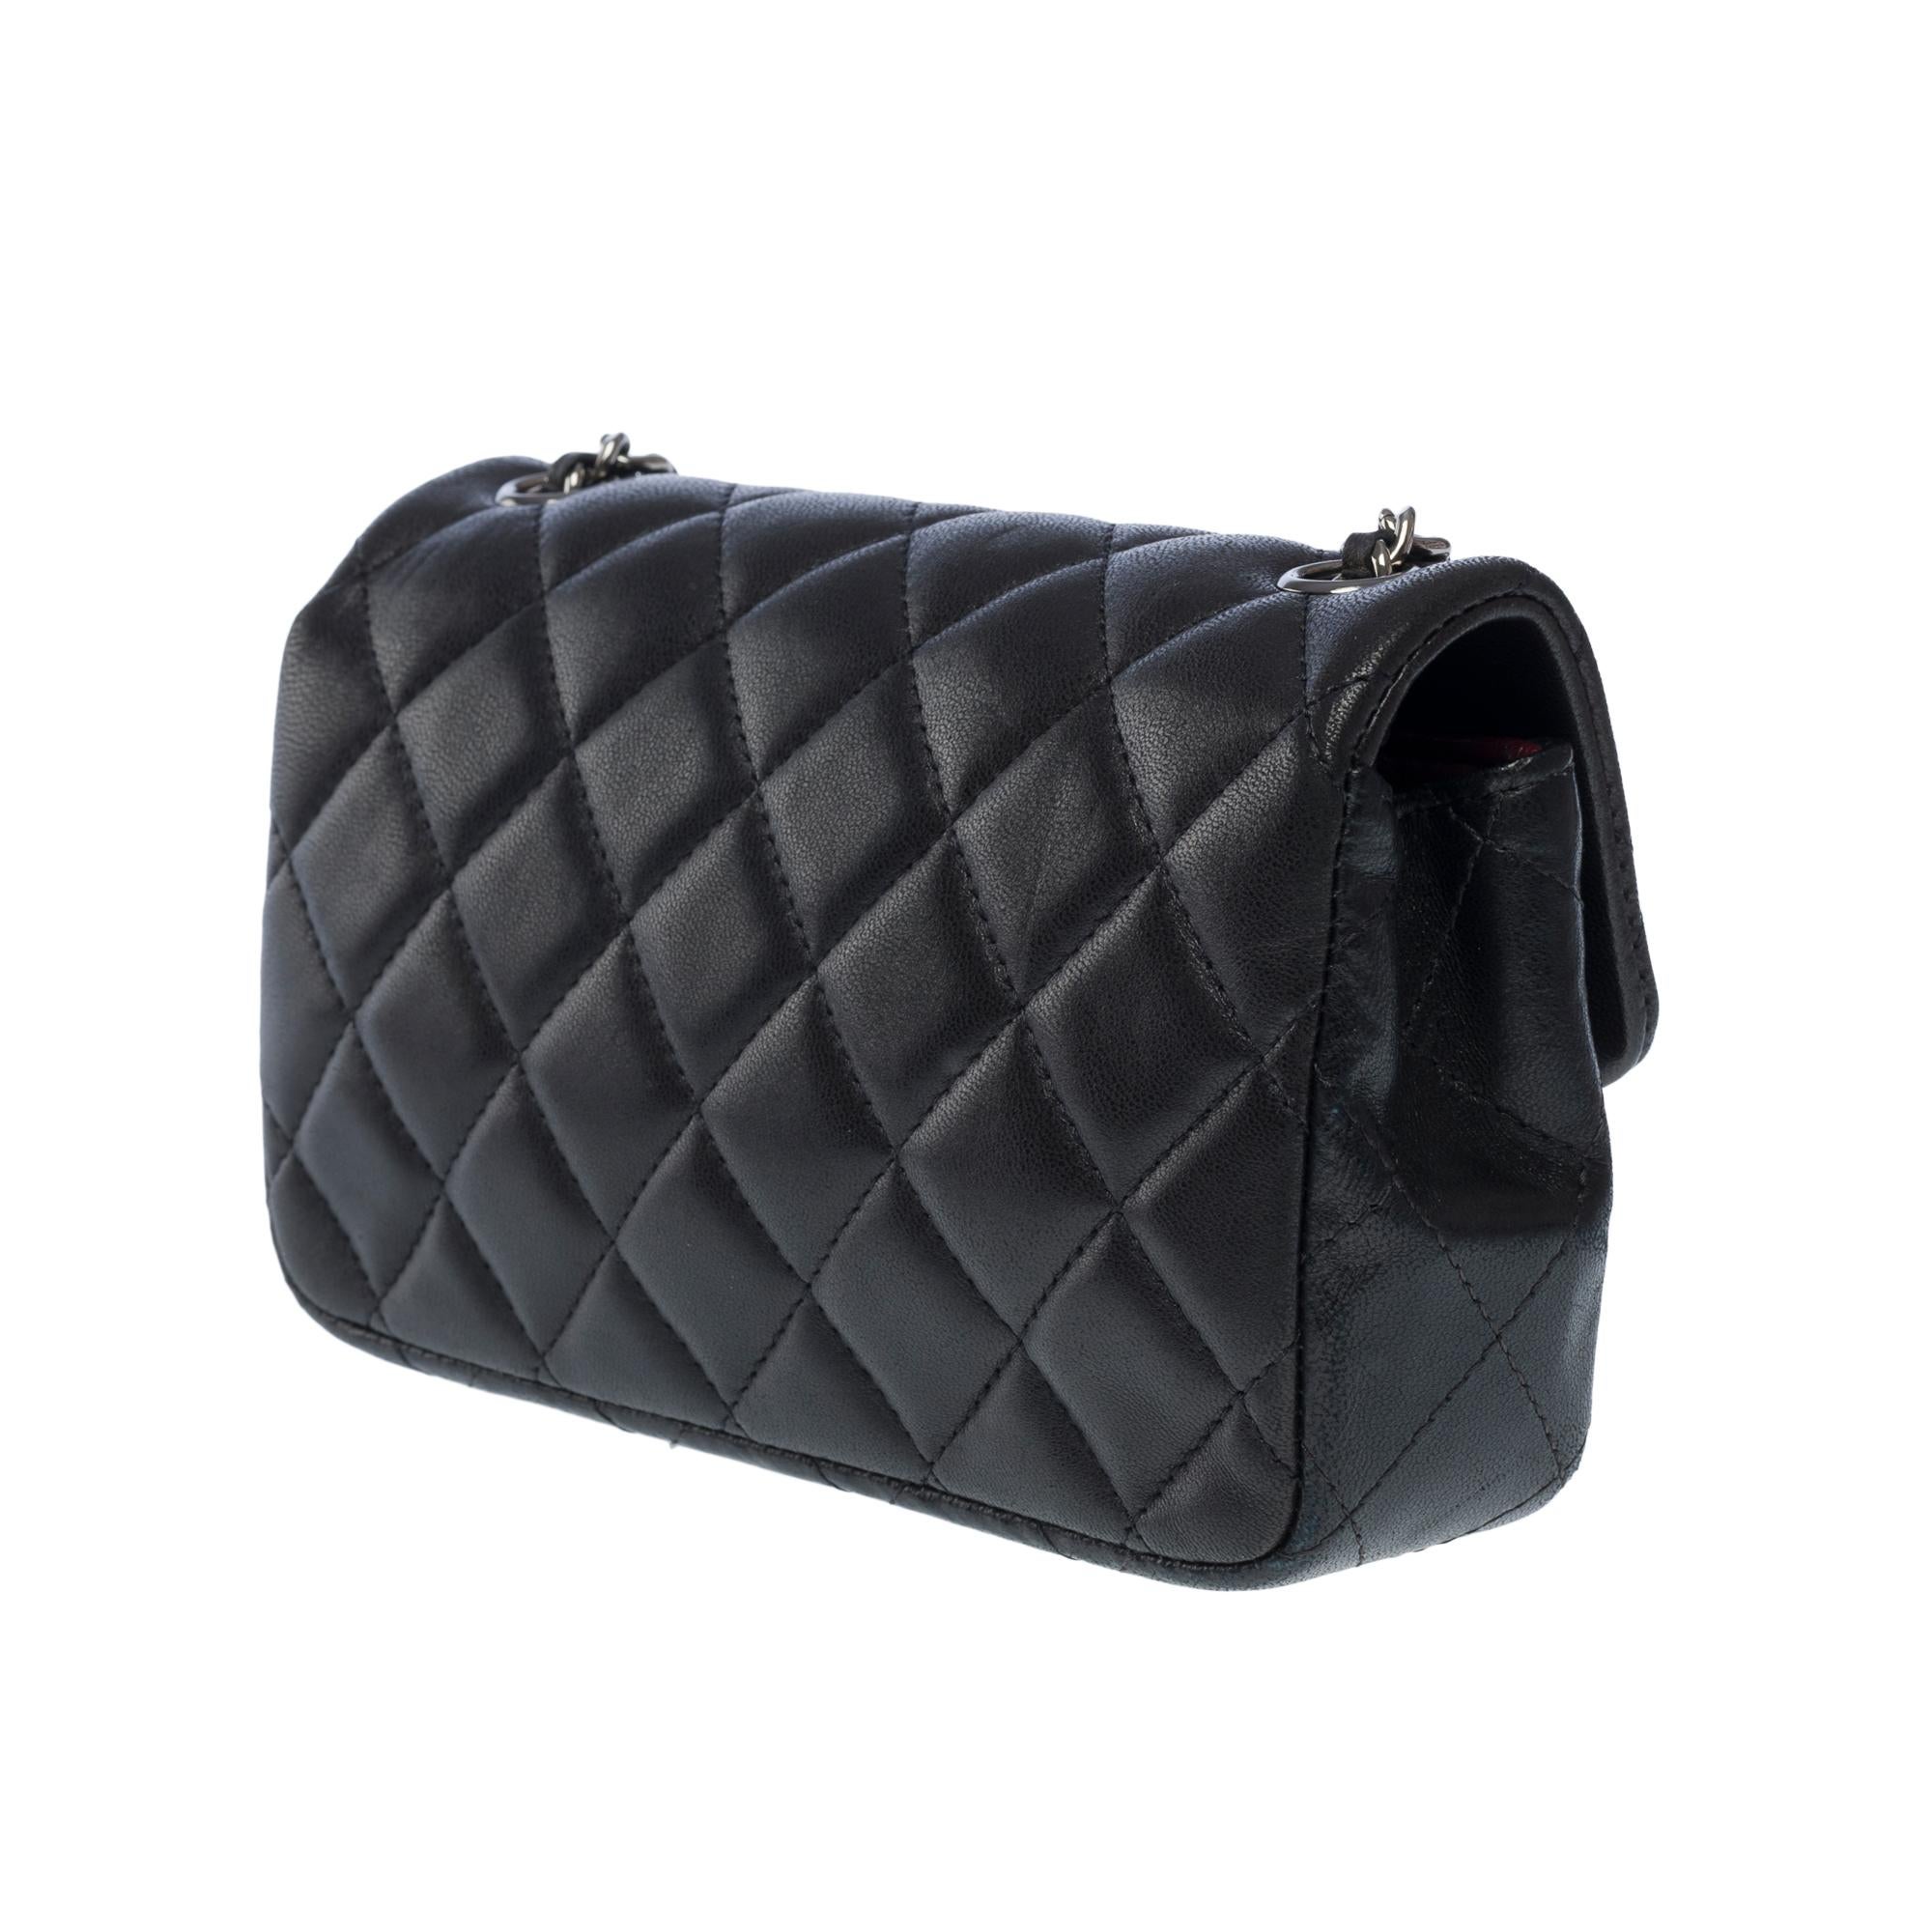 Magnifique sac à bandoulière Timeless de Chanel en agneau matelassé noir, BSHW 2